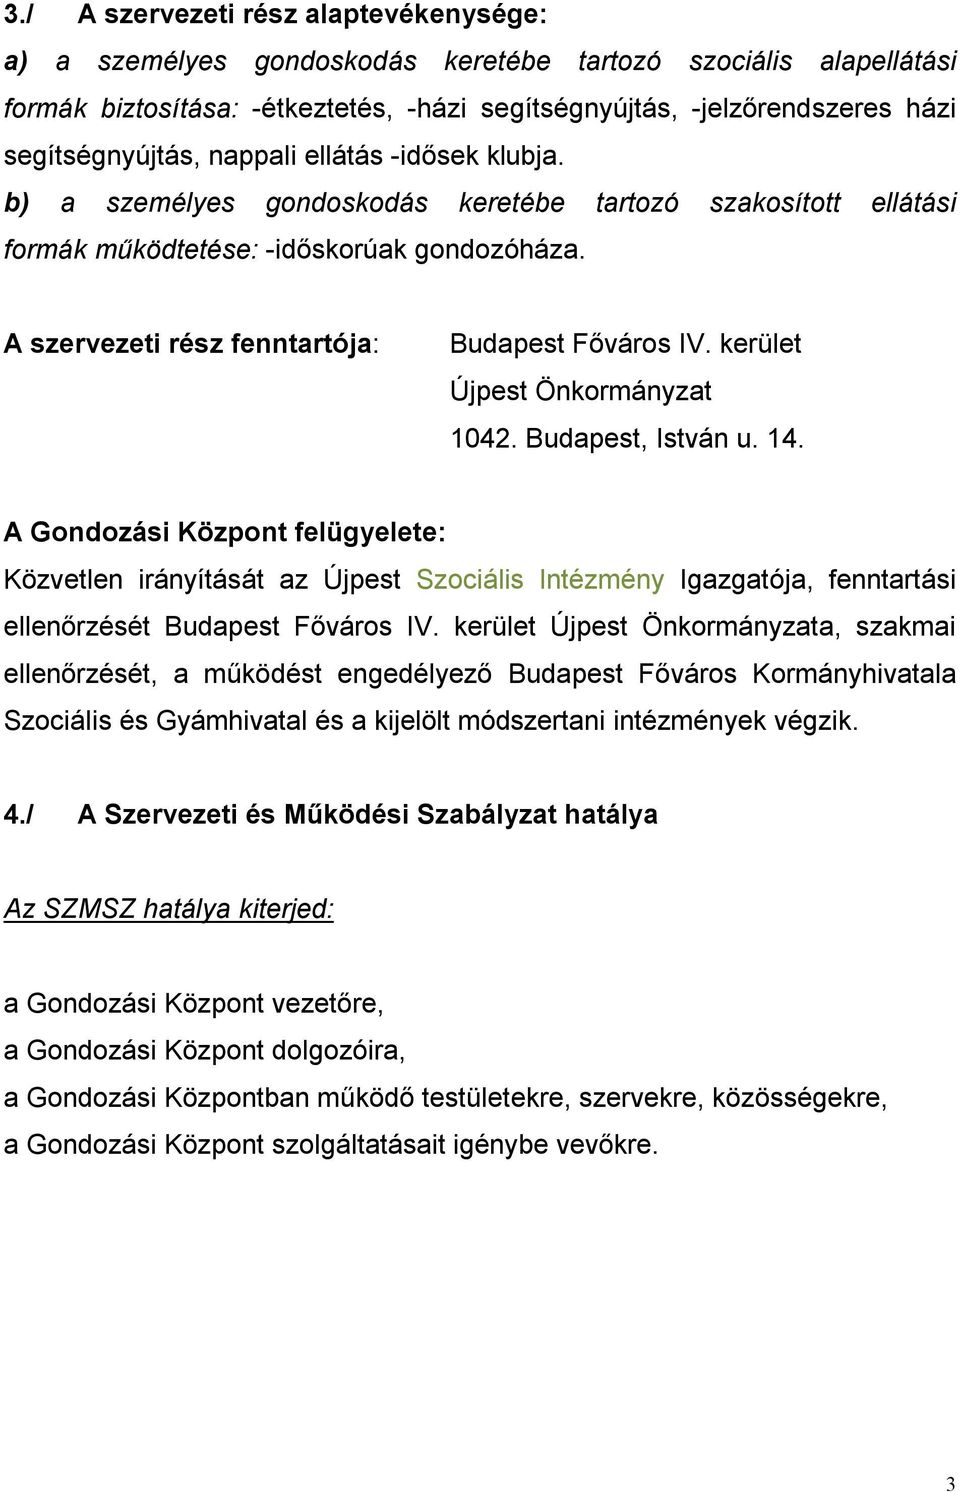 A szervezeti rész fenntartója: Budapest Főváros IV. kerület Újpest Önkormányzat 1042. Budapest, István u. 14.